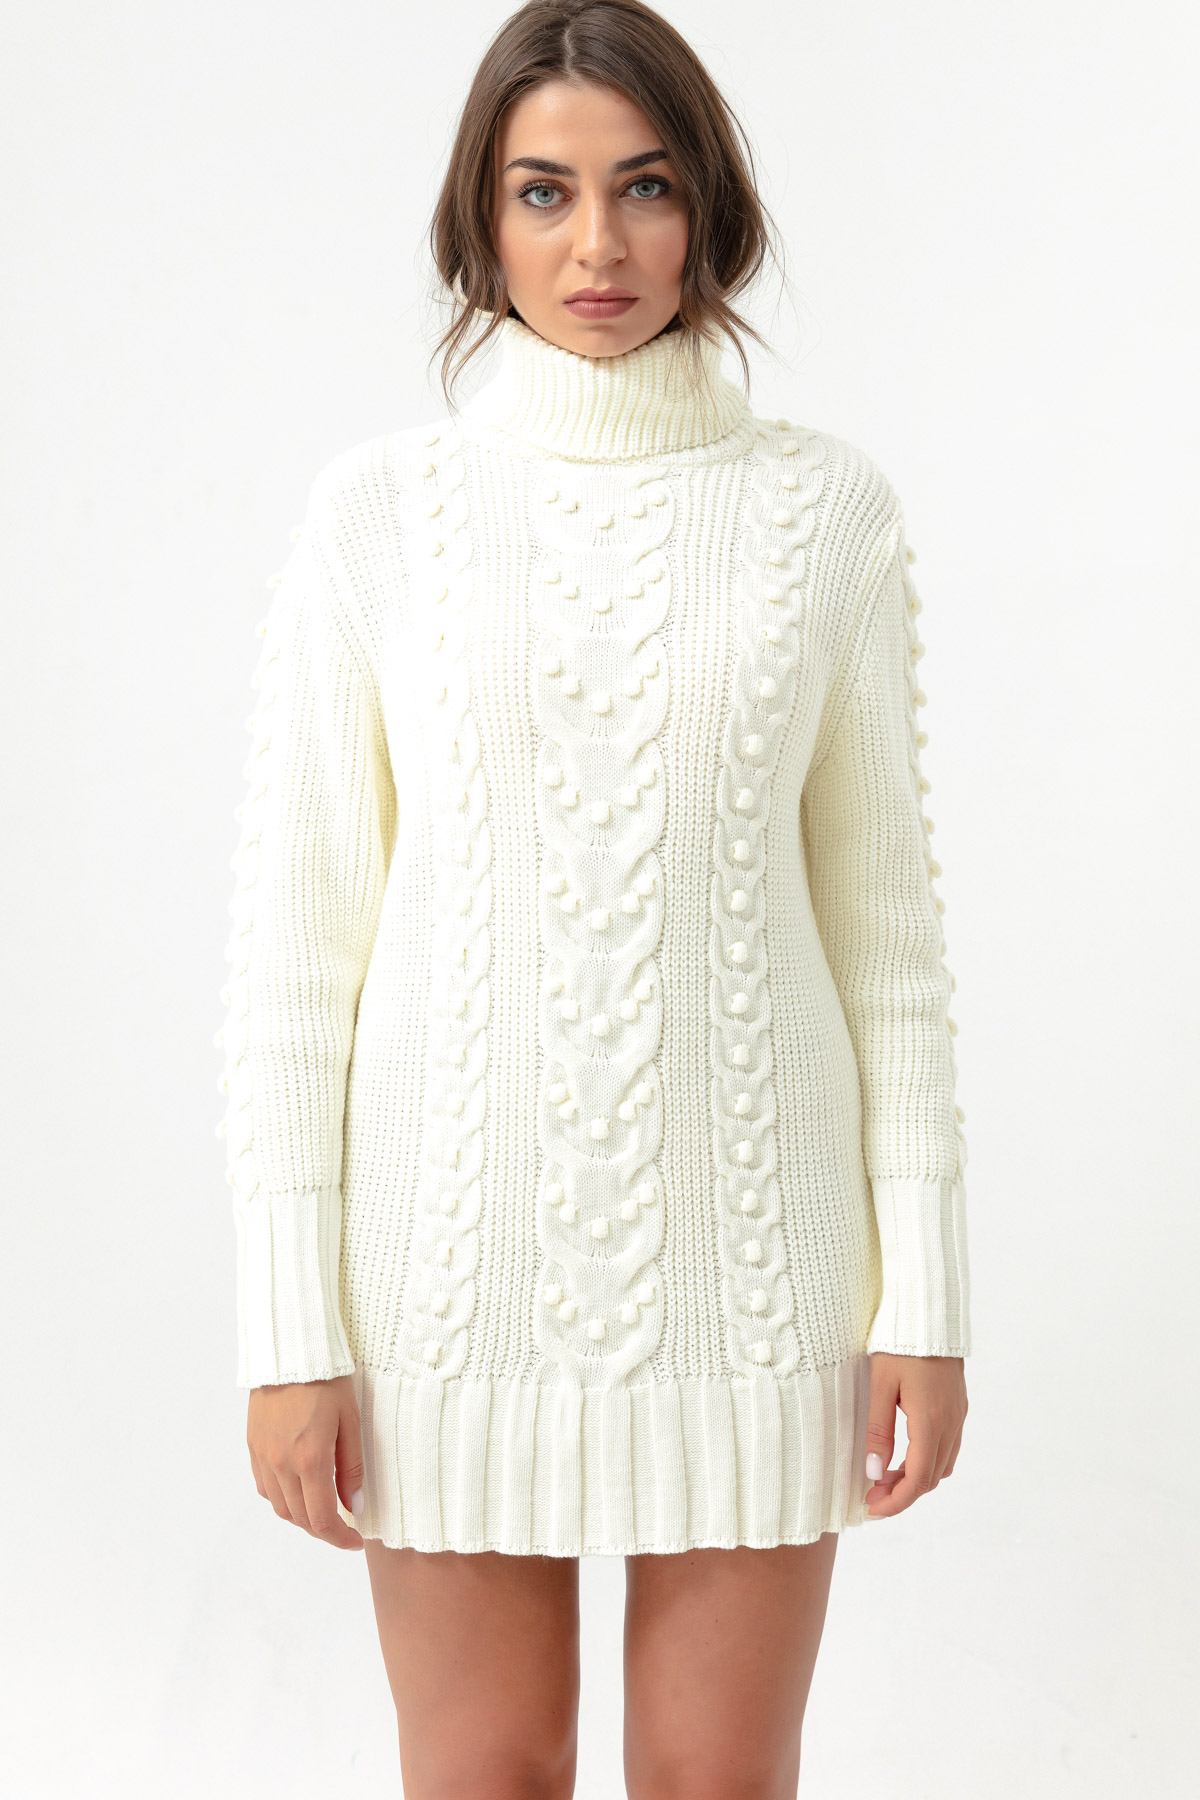 Women's White Turtleneck Knitwear Dress